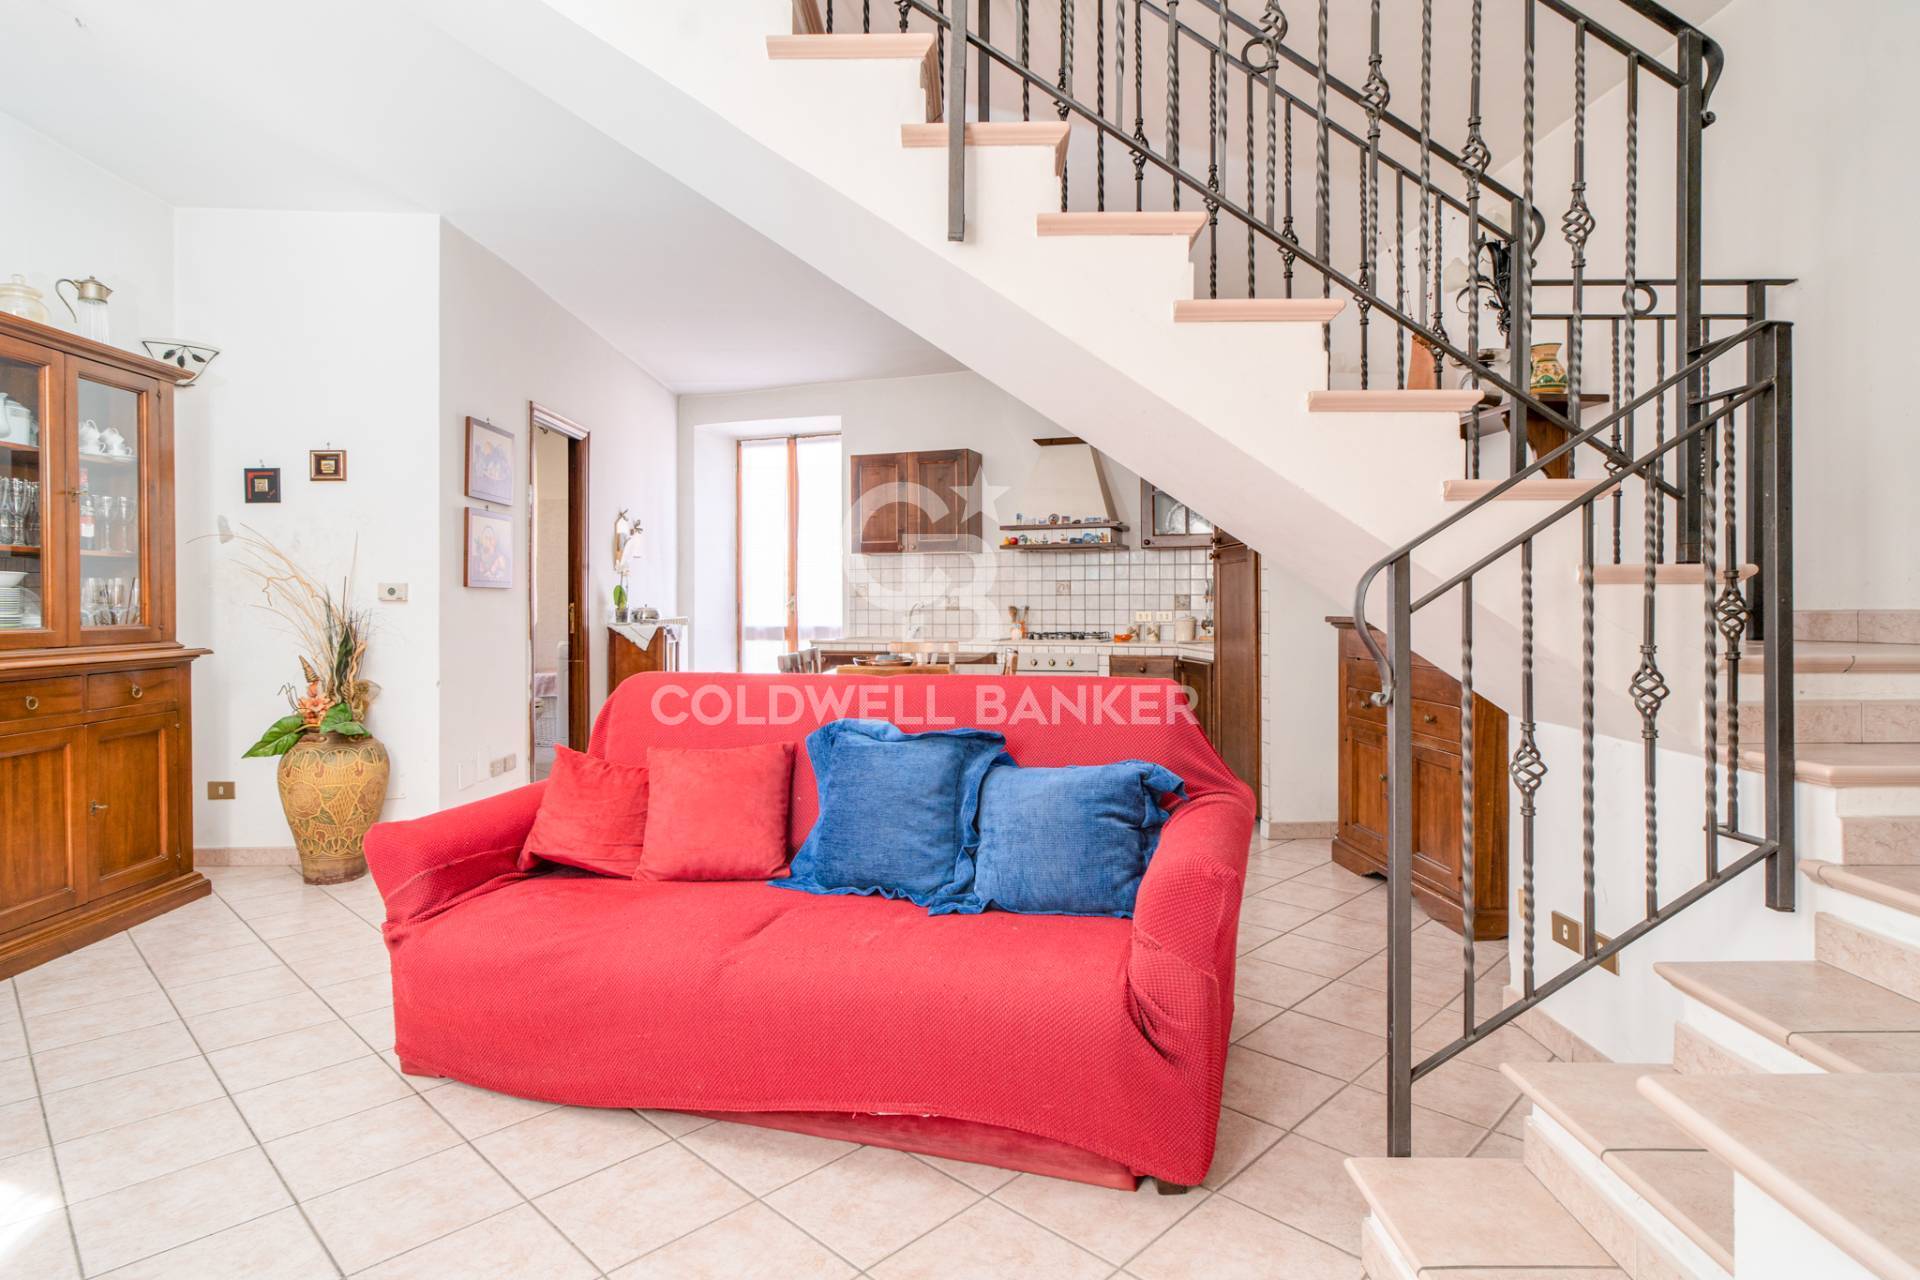 Appartamento in vendita a Tolfa, 3 locali, prezzo € 75.000 | CambioCasa.it